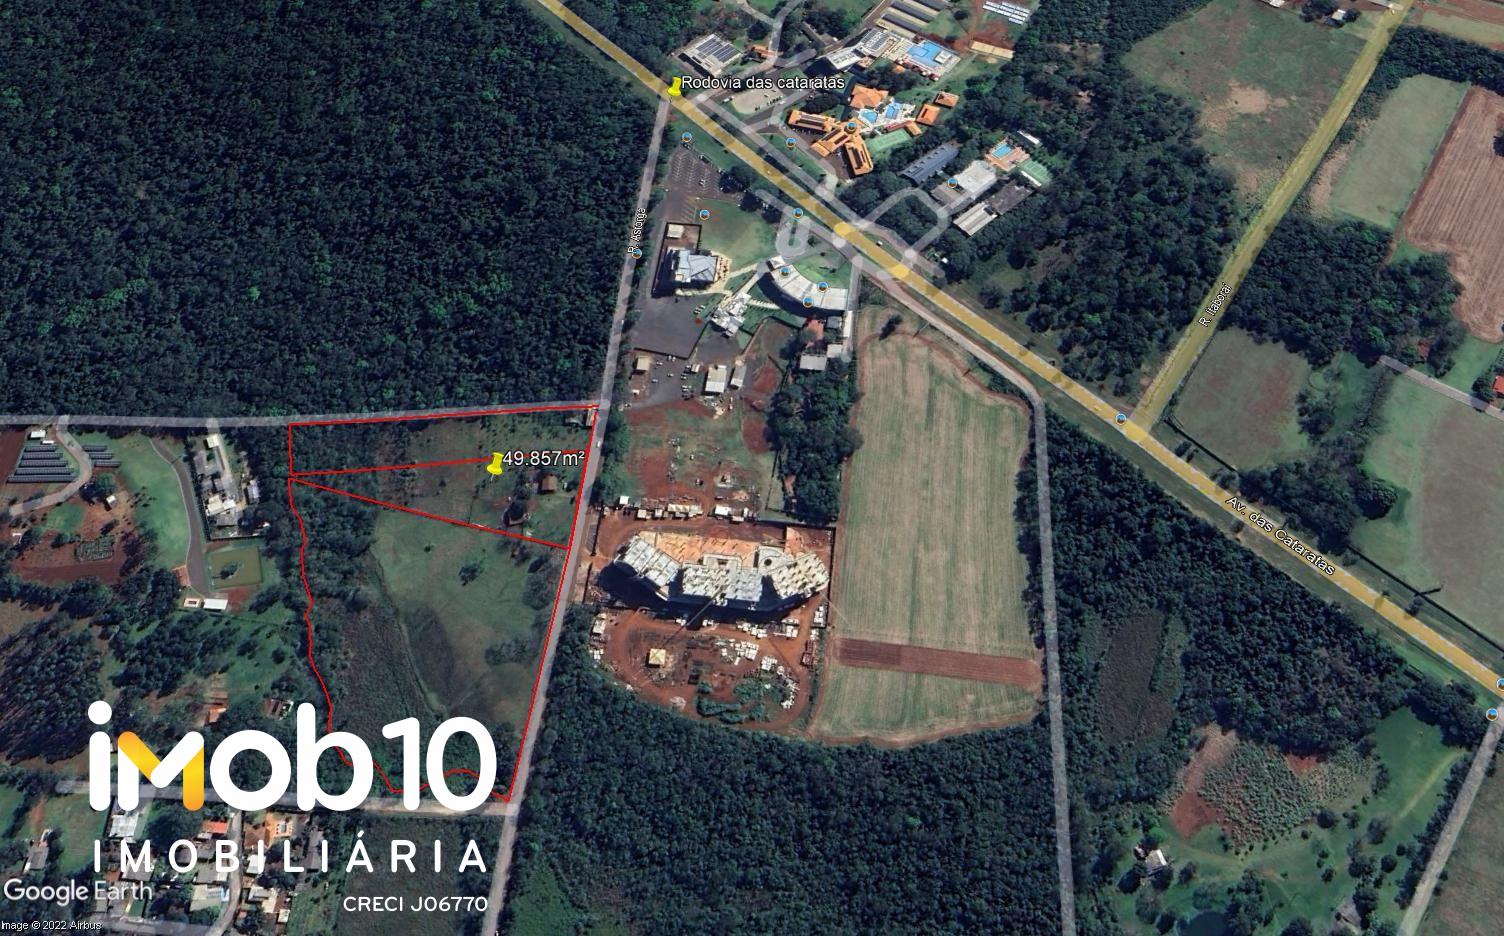 Área à venda, 49.857m  Rodovia das Cataratas - Remanso Grande - Foz do Iguaçu Pr